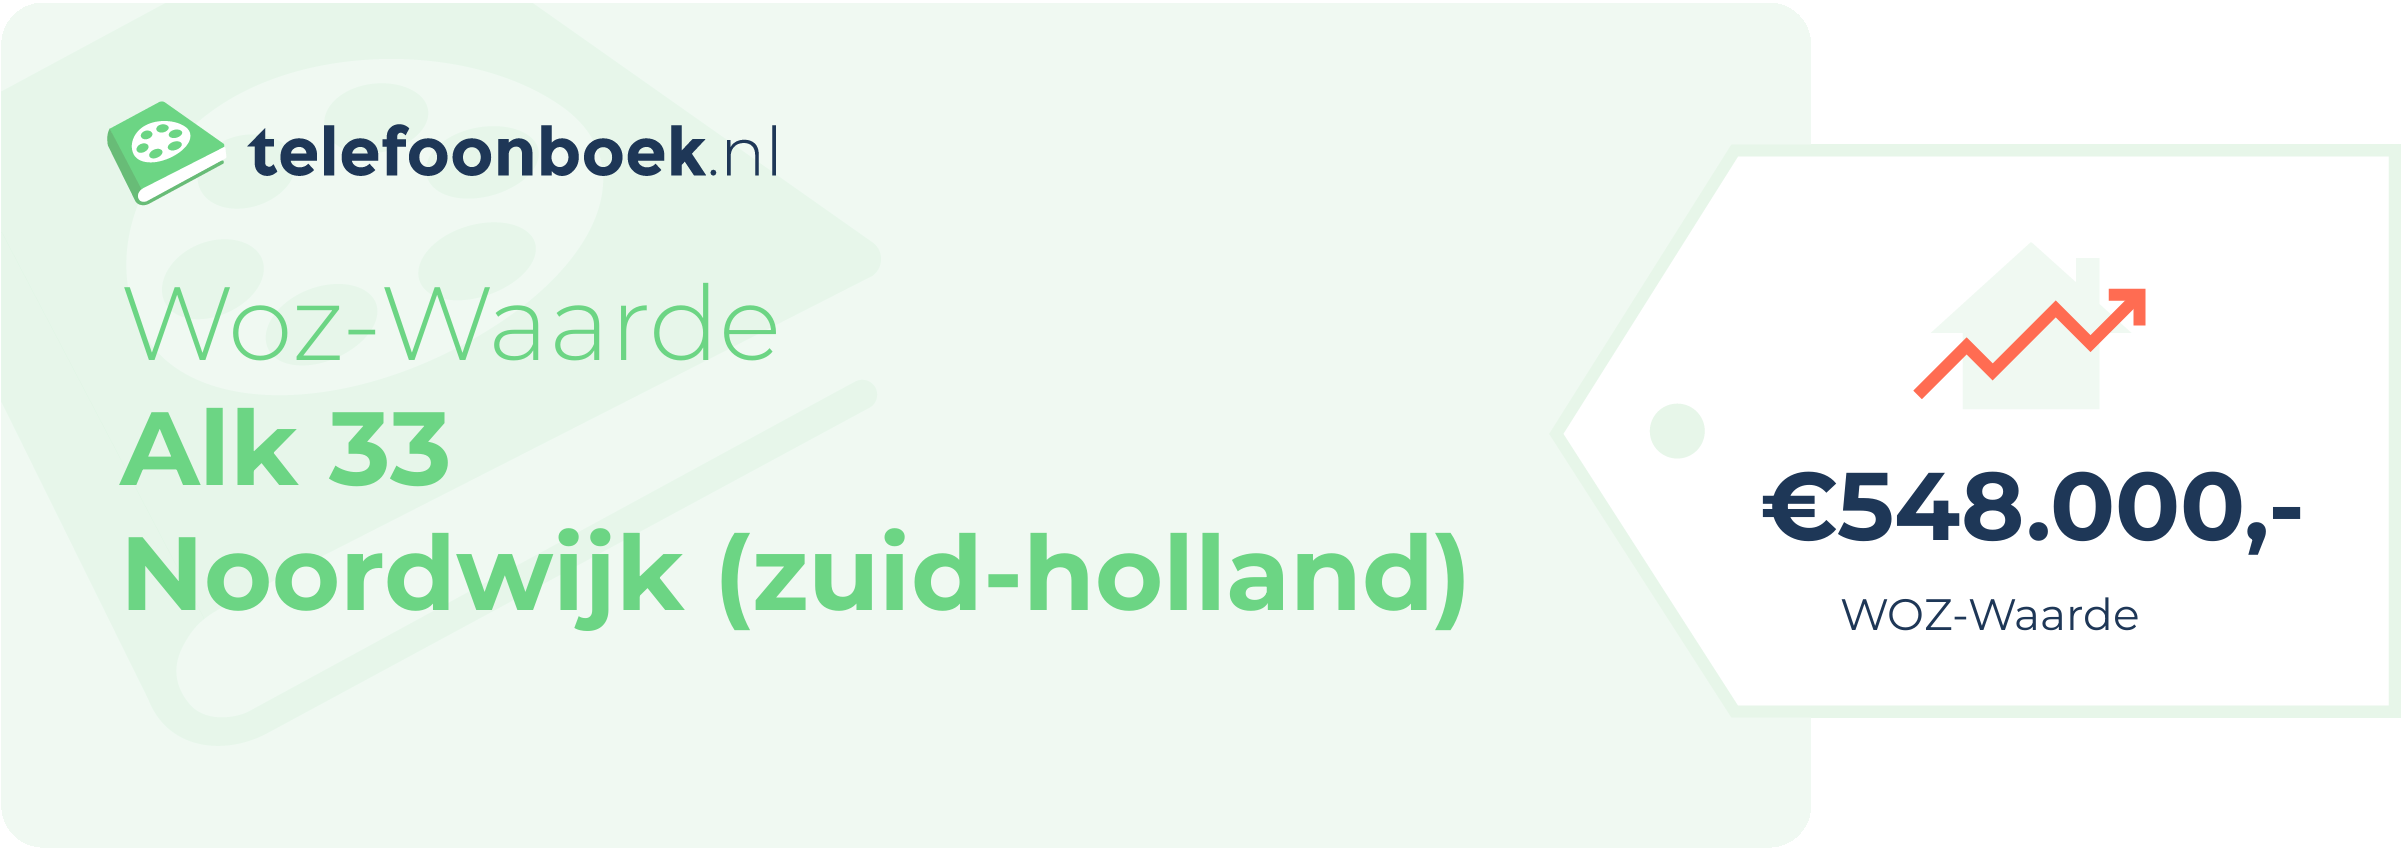 WOZ-waarde Alk 33 Noordwijk (Zuid-Holland)